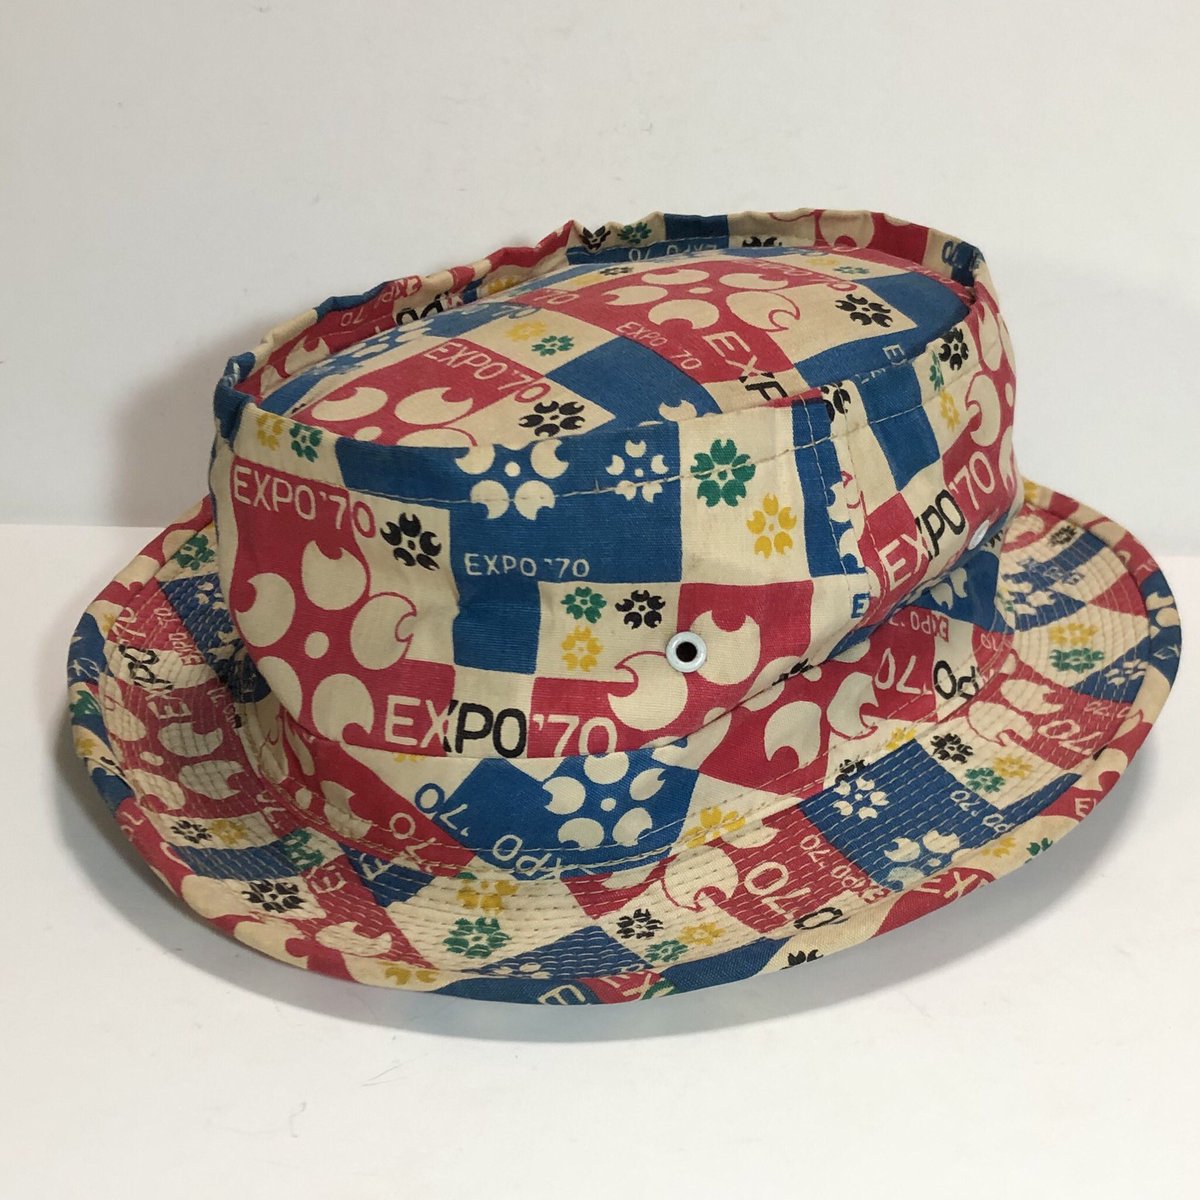 井上 謙二 Expo 万博の帽子 面白い帽子を入手しました このタイプの柄は初めて見ました 大阪万博 Expo70 日本万国博覧会